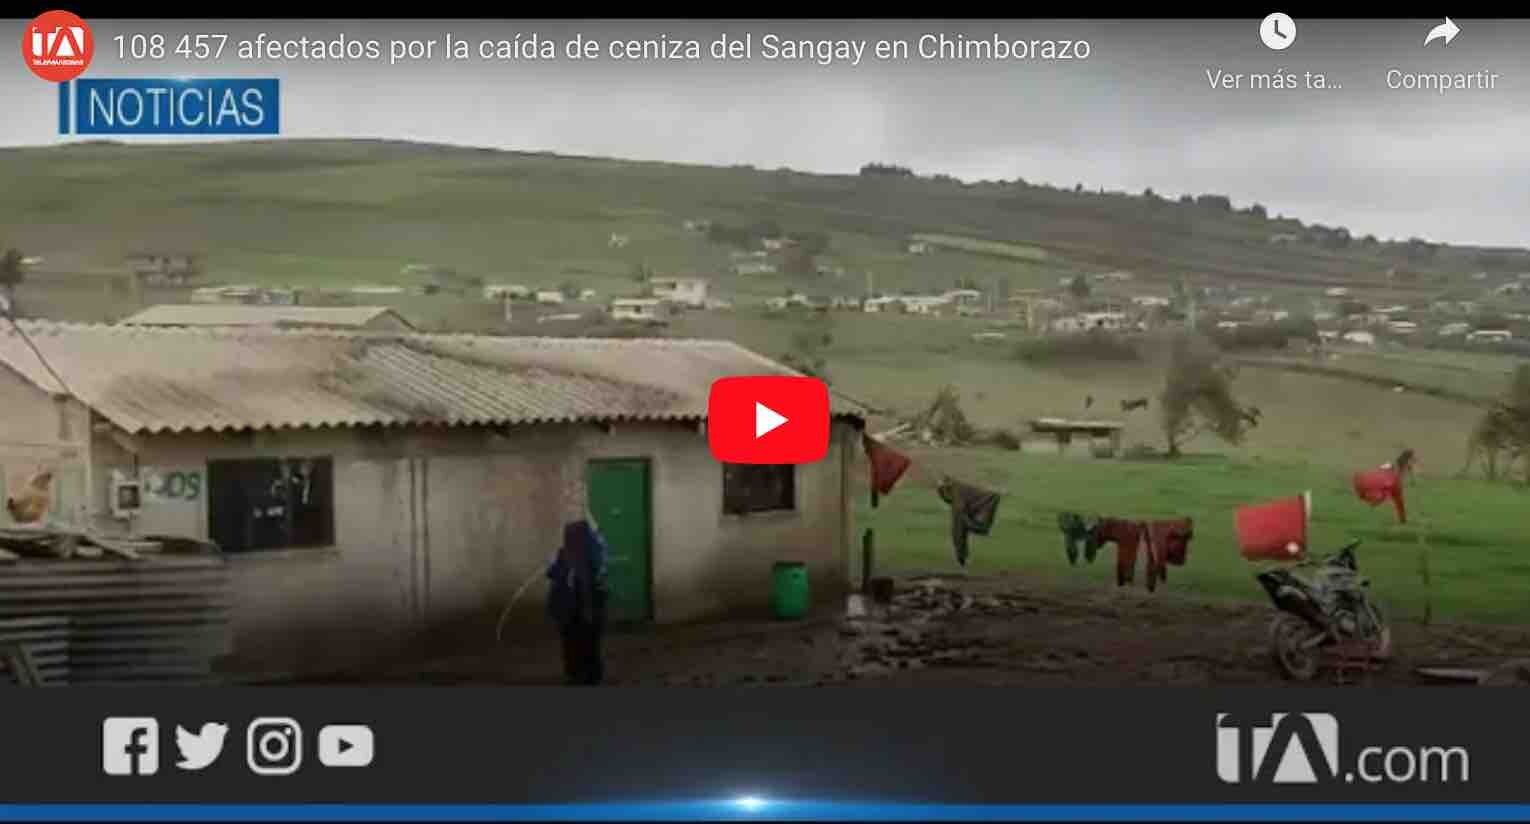 VIDEO: 108 457 afectados por la caída de ceniza del Sangay en Chimborazo